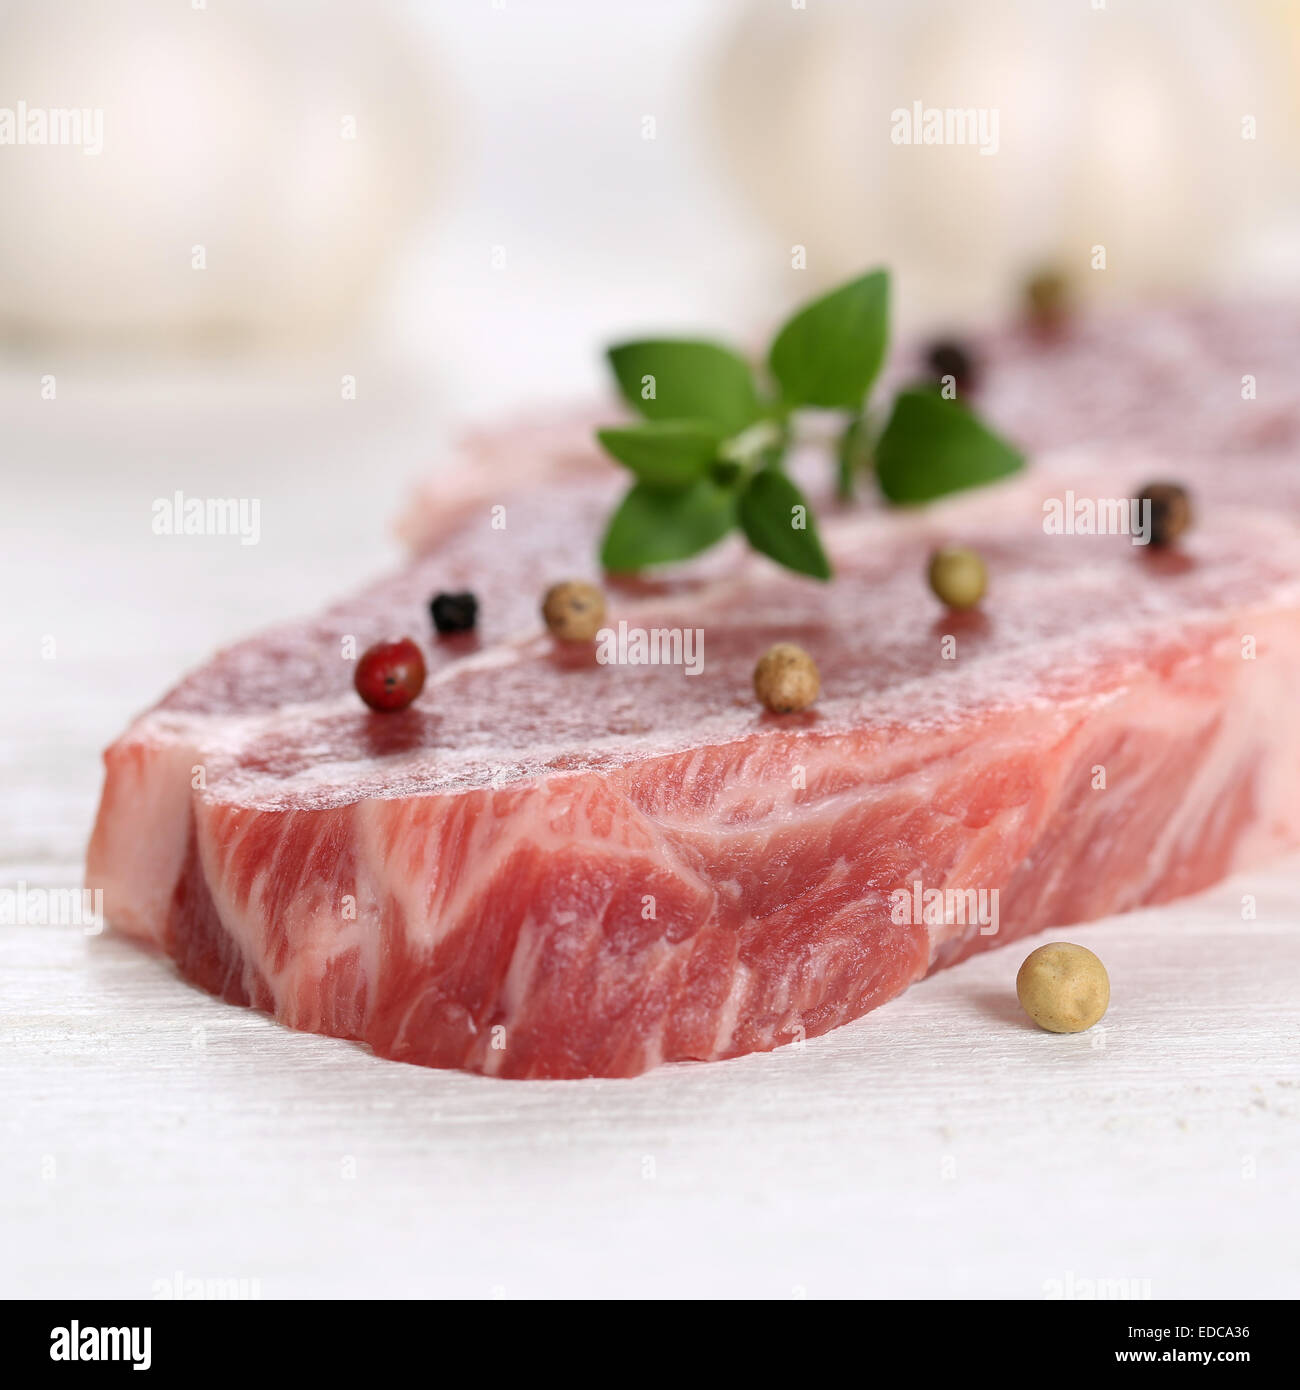 La préparation des aliments la viande de porc cru steak au poivre escalope sur une table en bois Banque D'Images